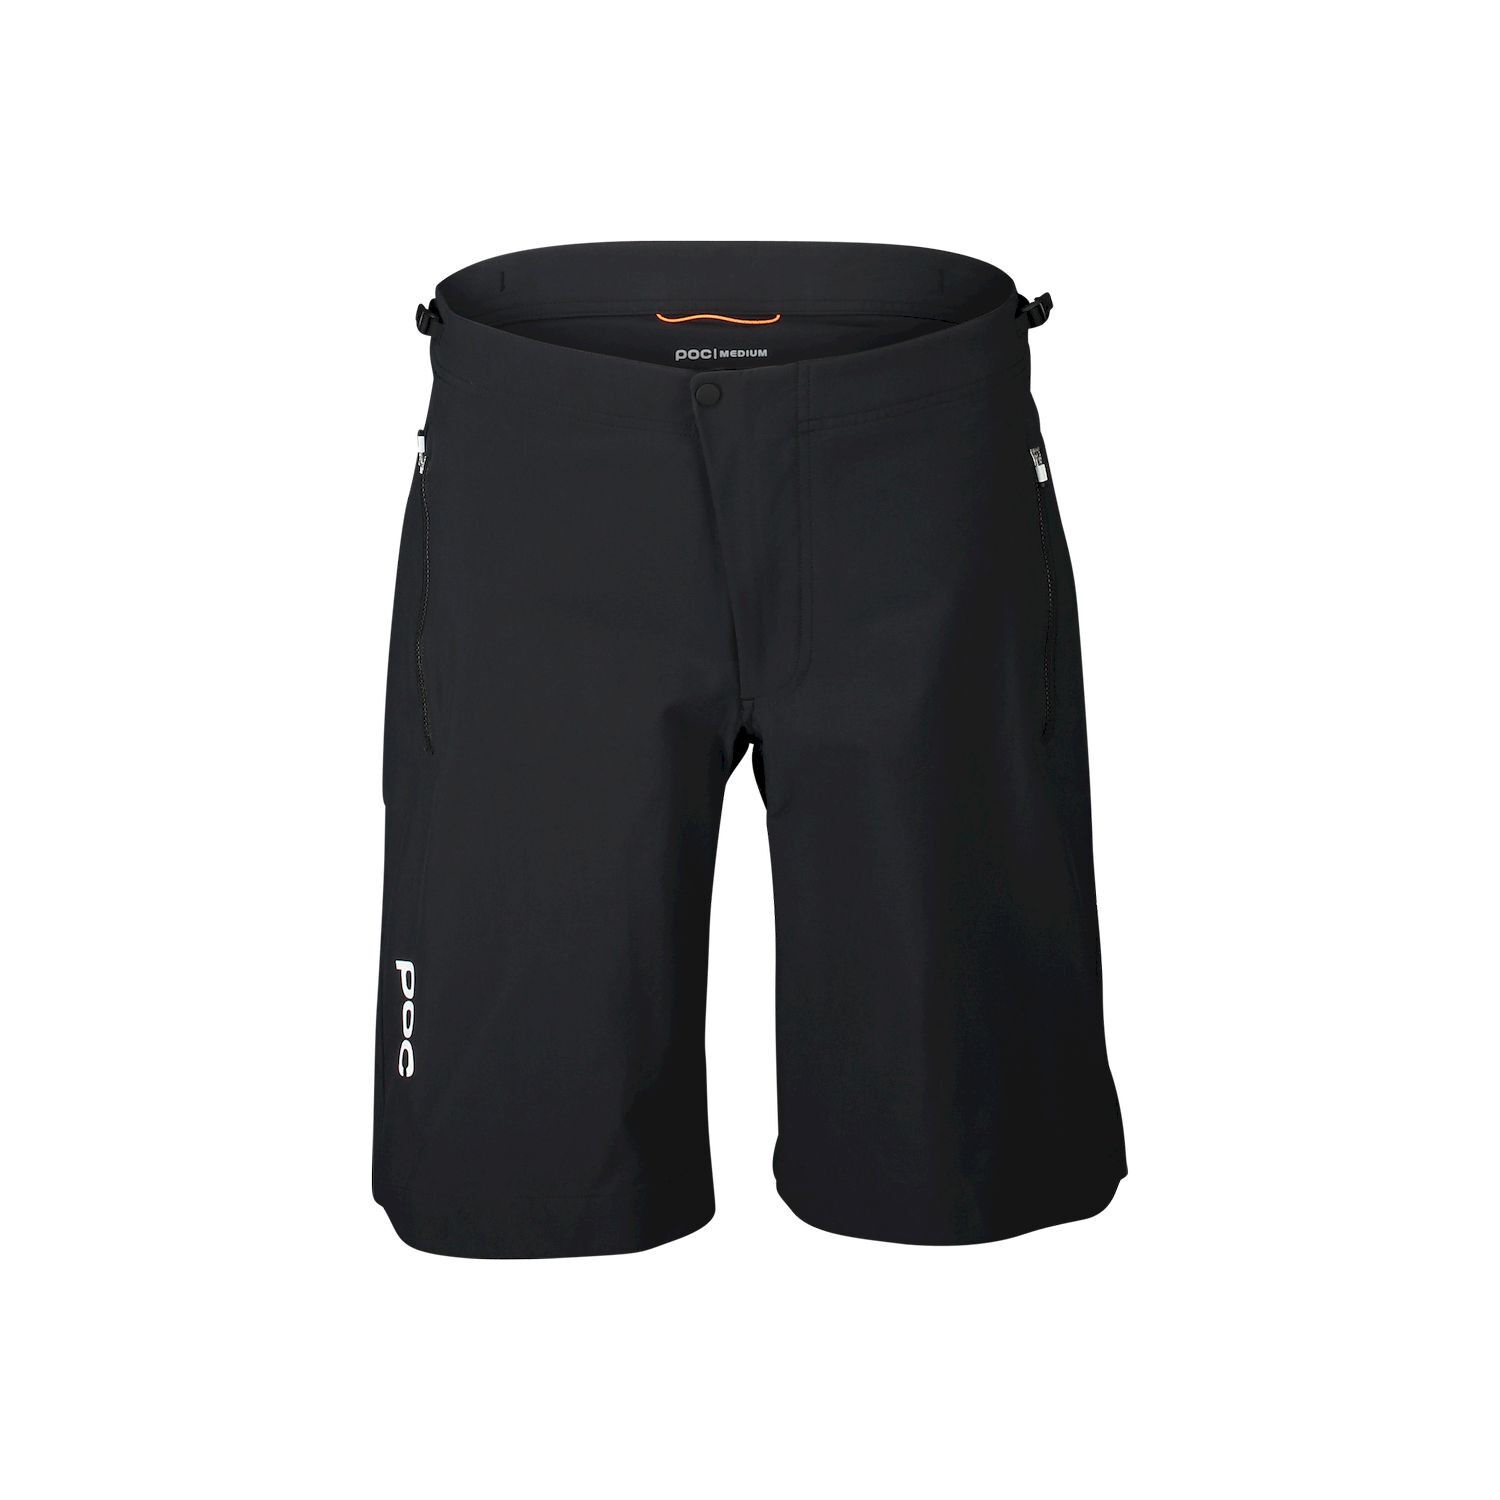 Poc Essential Enduro Short - MTB shorts - Women's